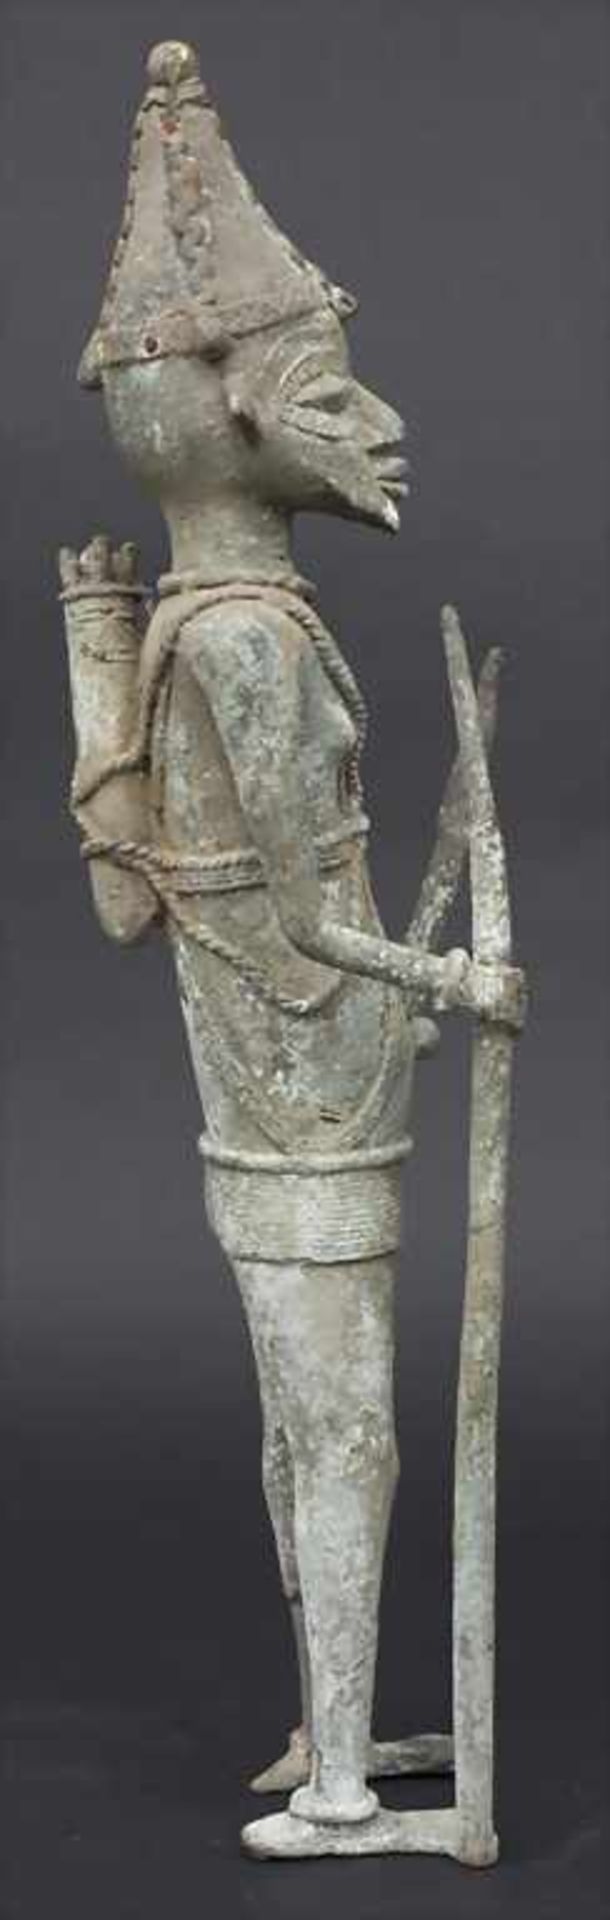 Jägerfigur, Yoruba, Nigeria, 2. Hälfte, 20. Jh.Material: Bronze, mit grünlicher Krustenpatina, - Bild 4 aus 5